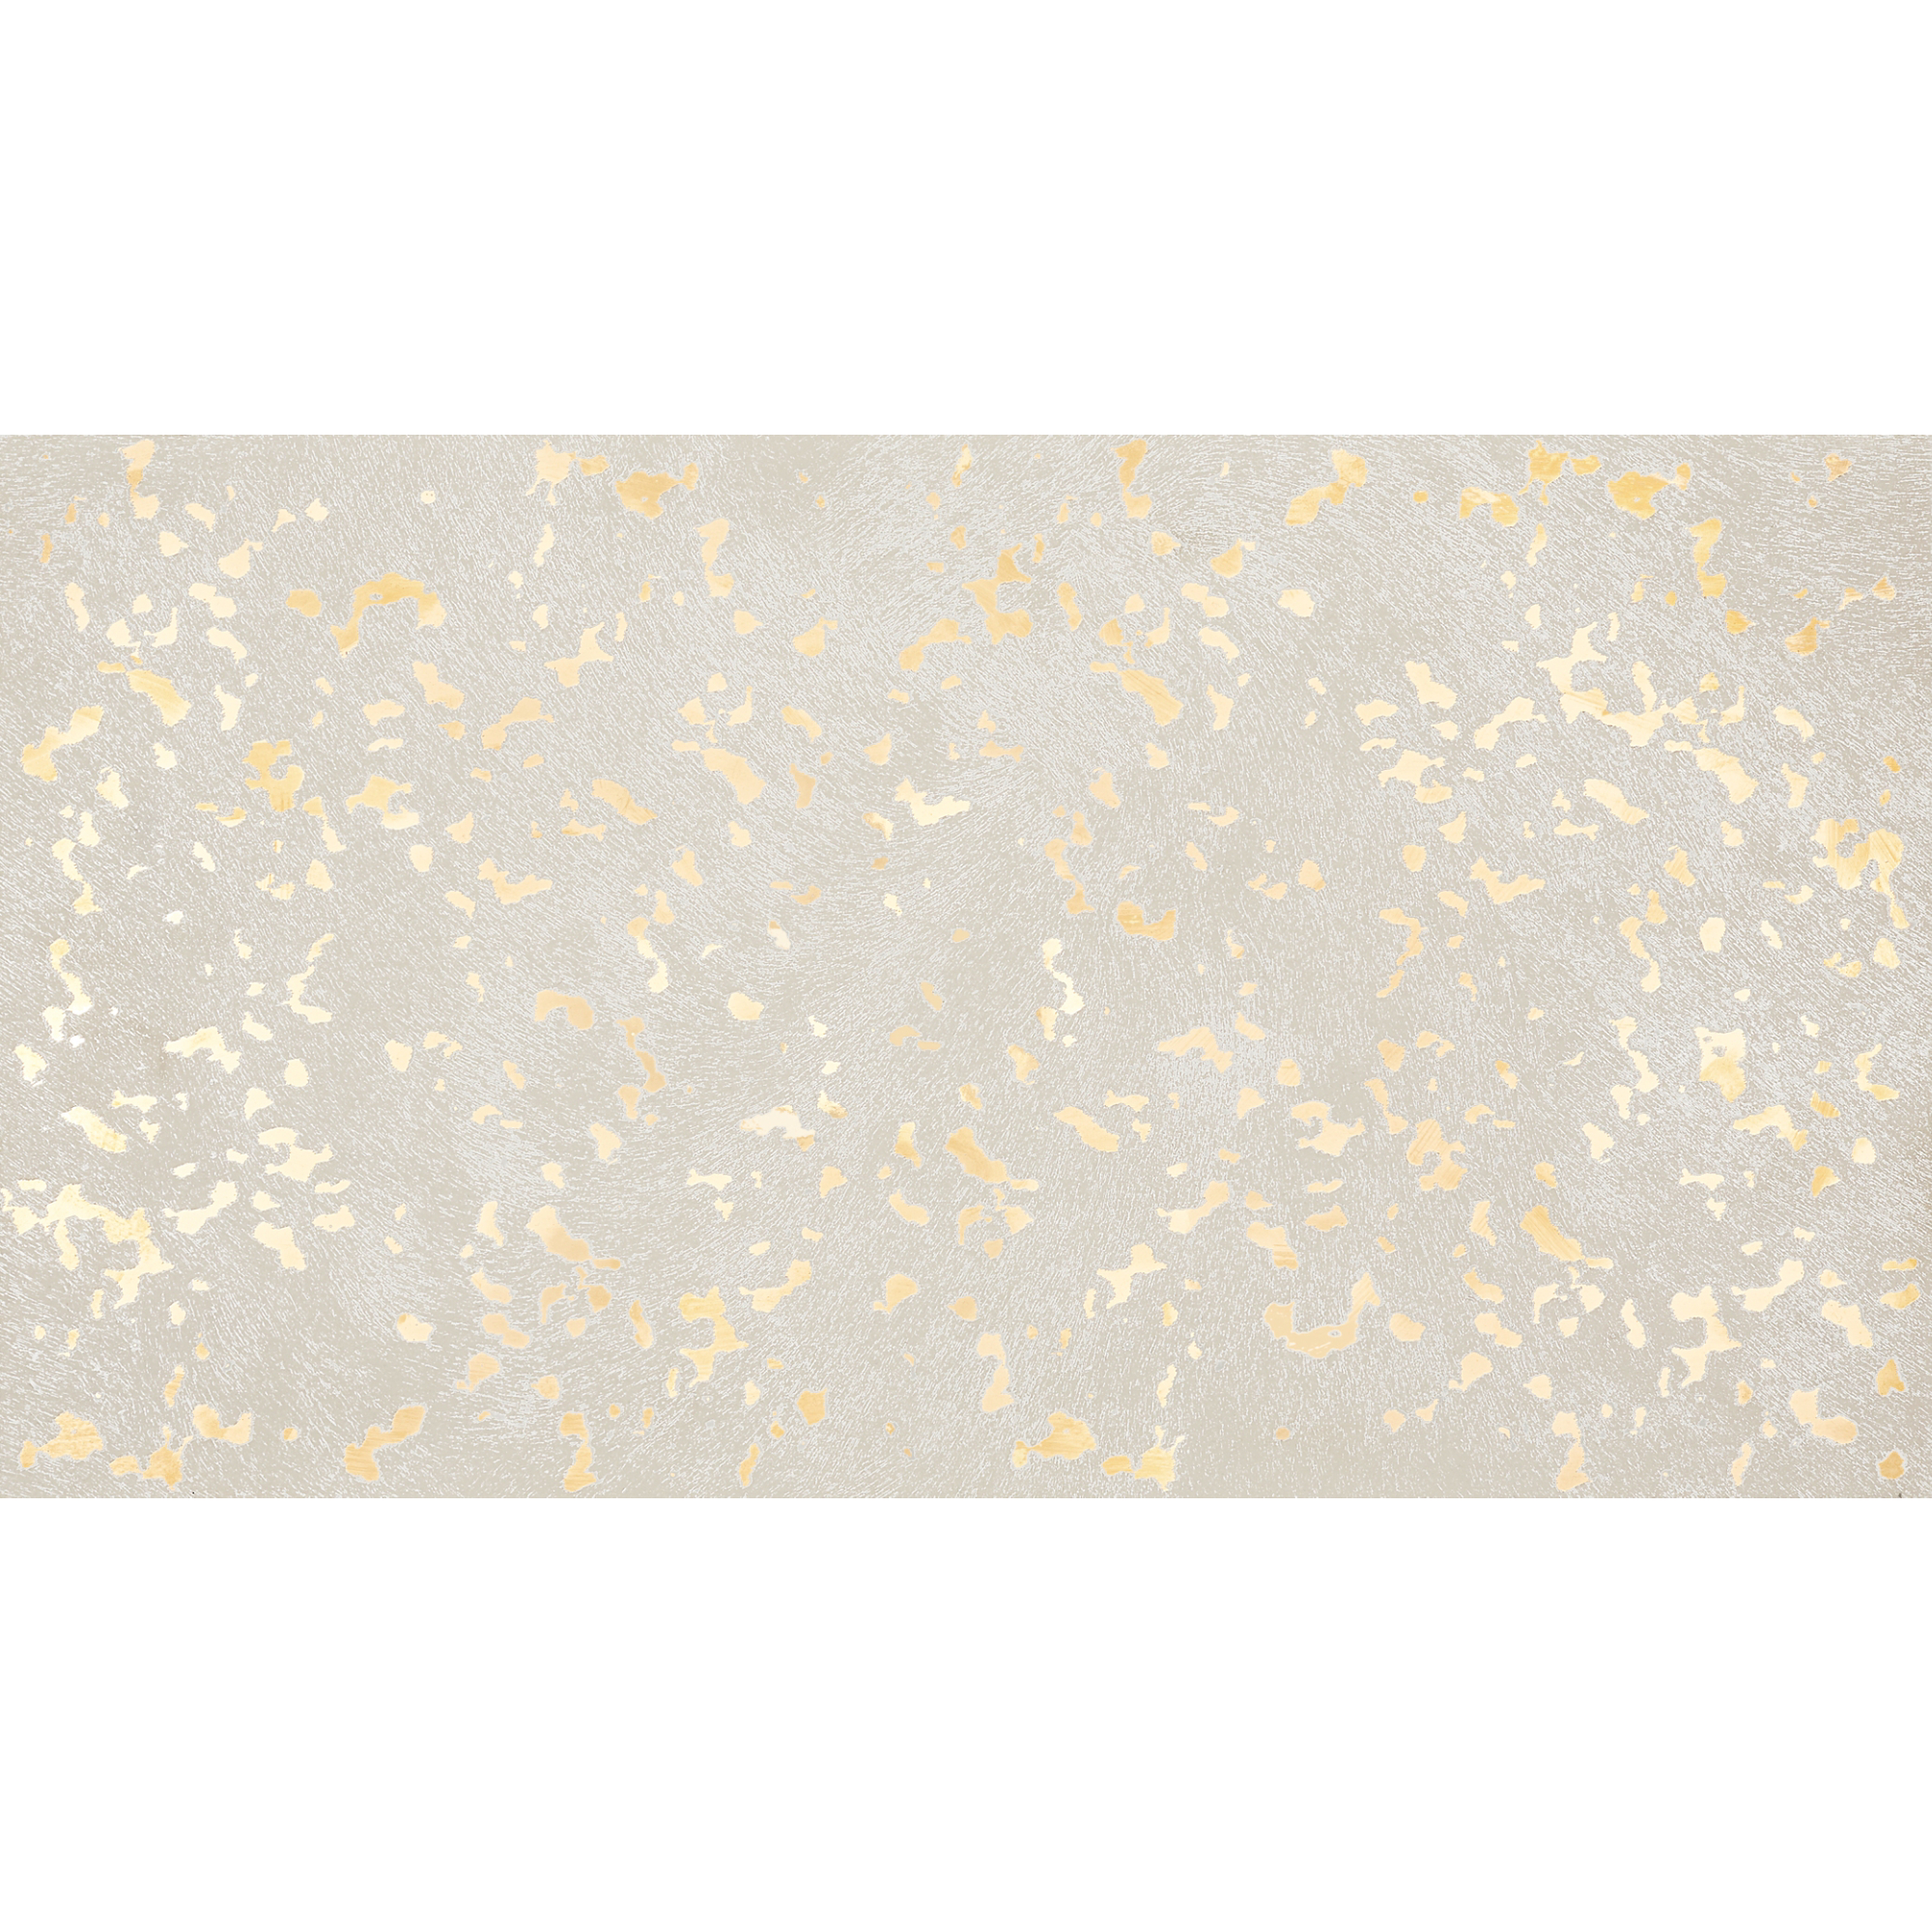 A. Selke Goldleaf Speckle 32x59cm